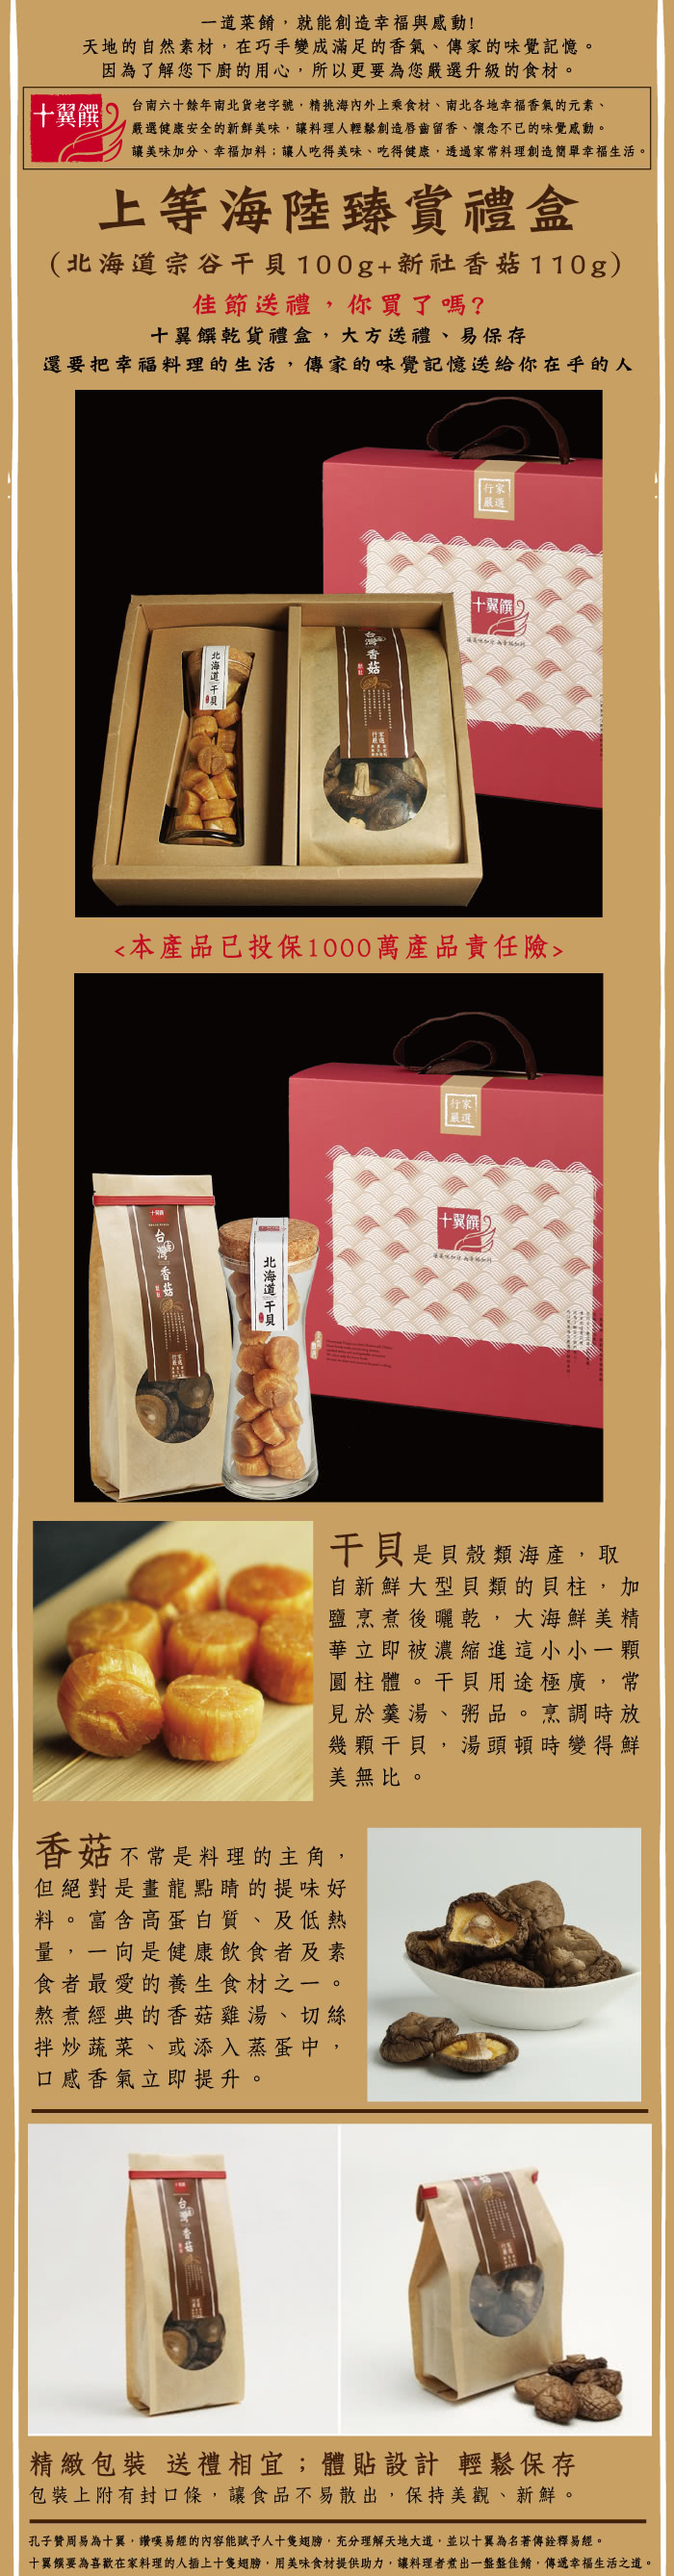 【十翼饌】海陸臻賞禮盒 3盒(新社香菇110g+北海道干貝100g)